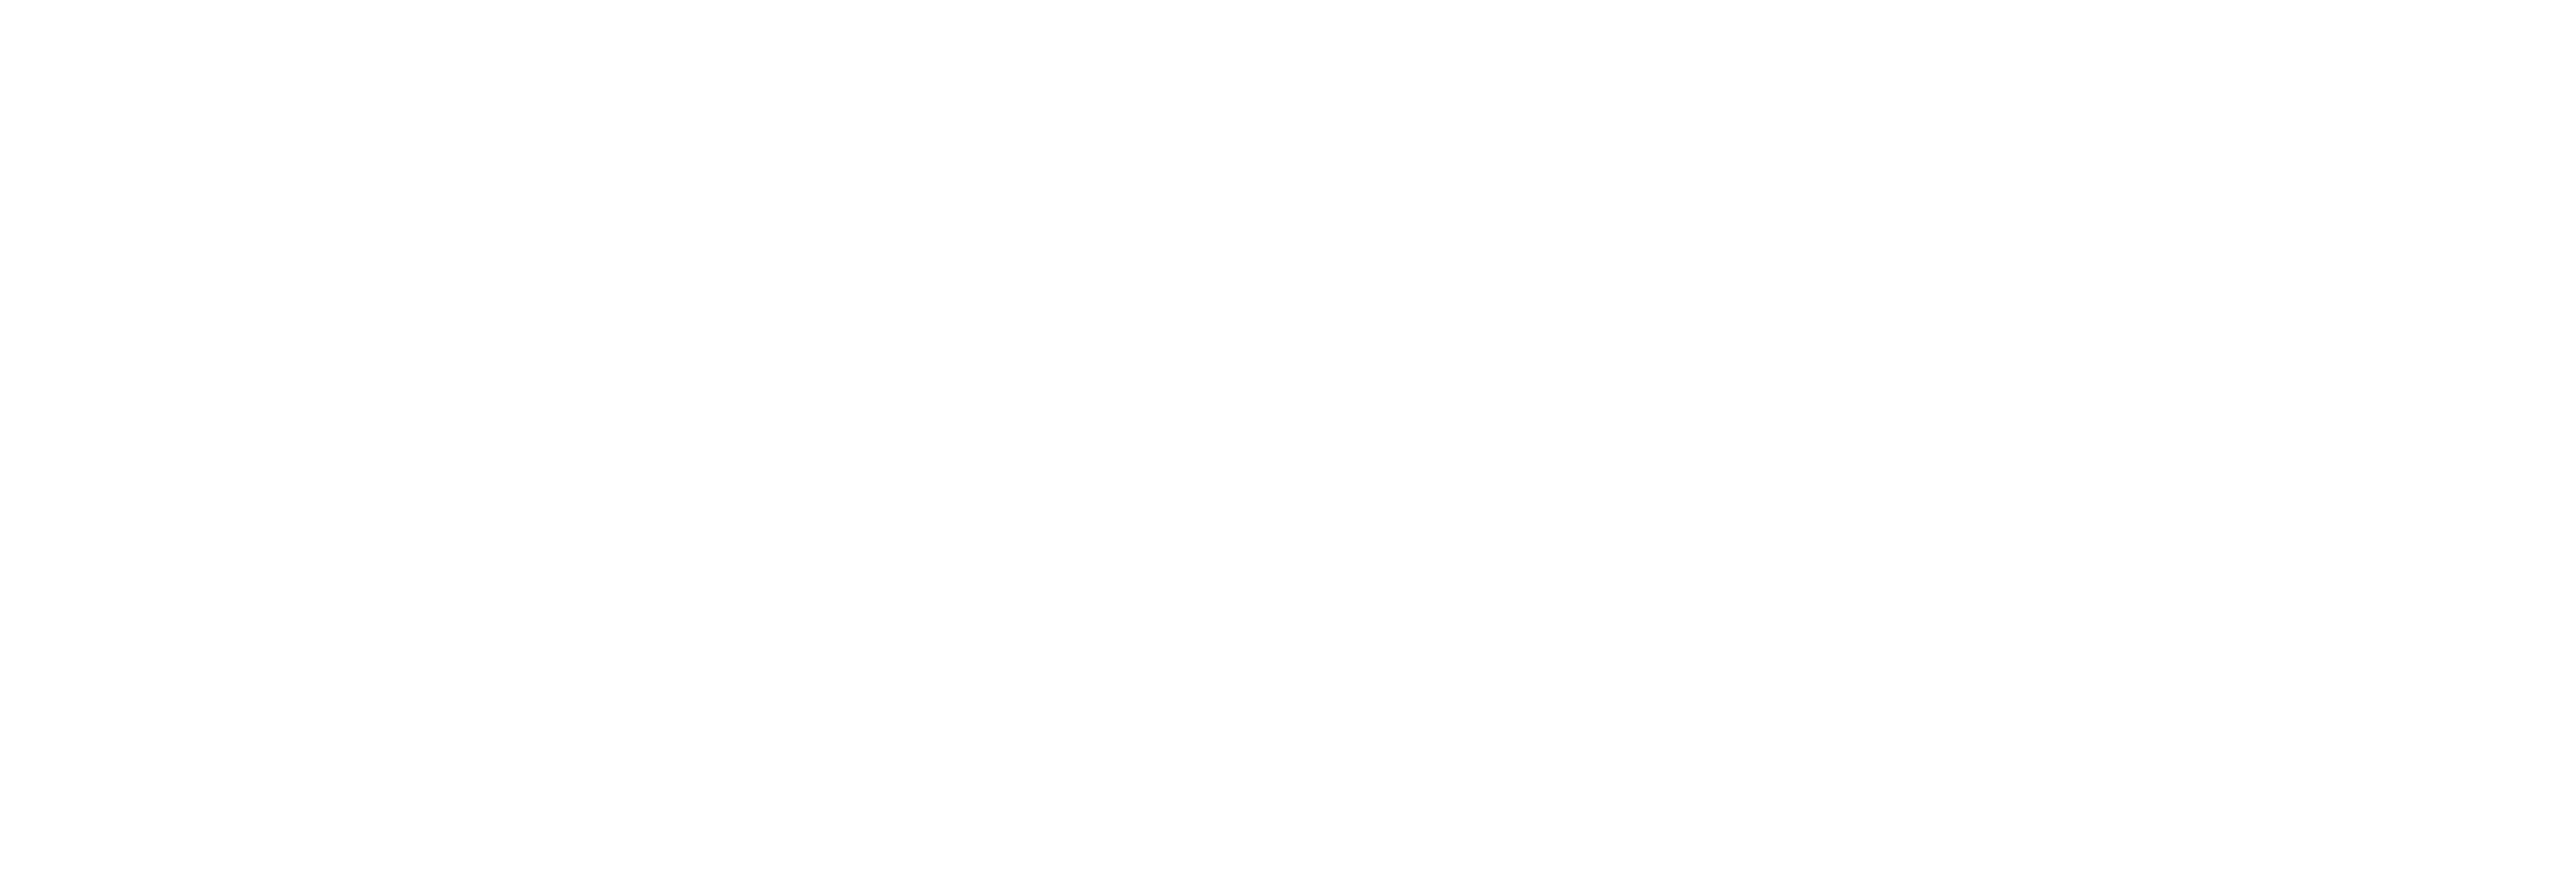 www.electricbase.co.uk